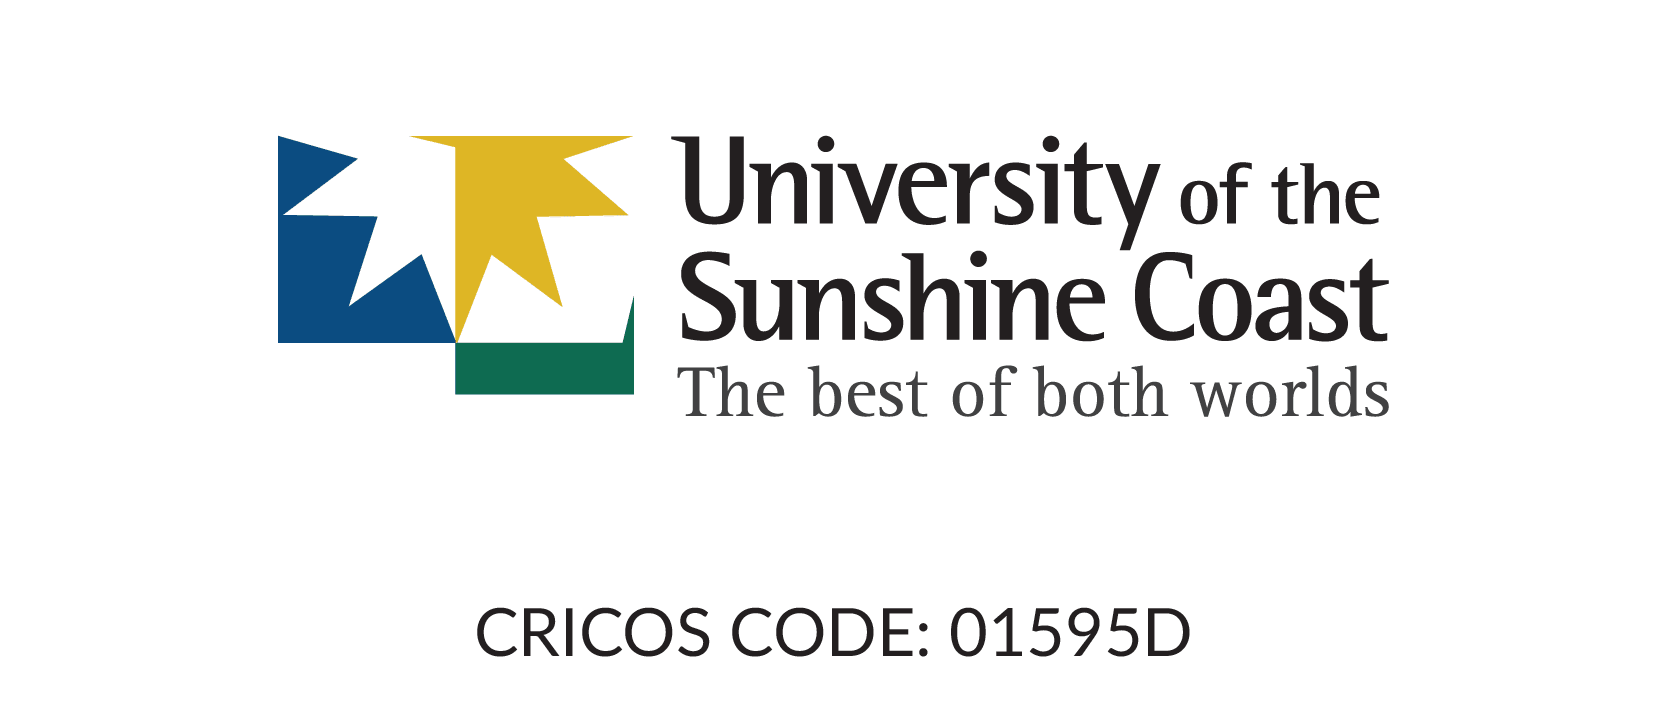 The University of the Sunshine Coast